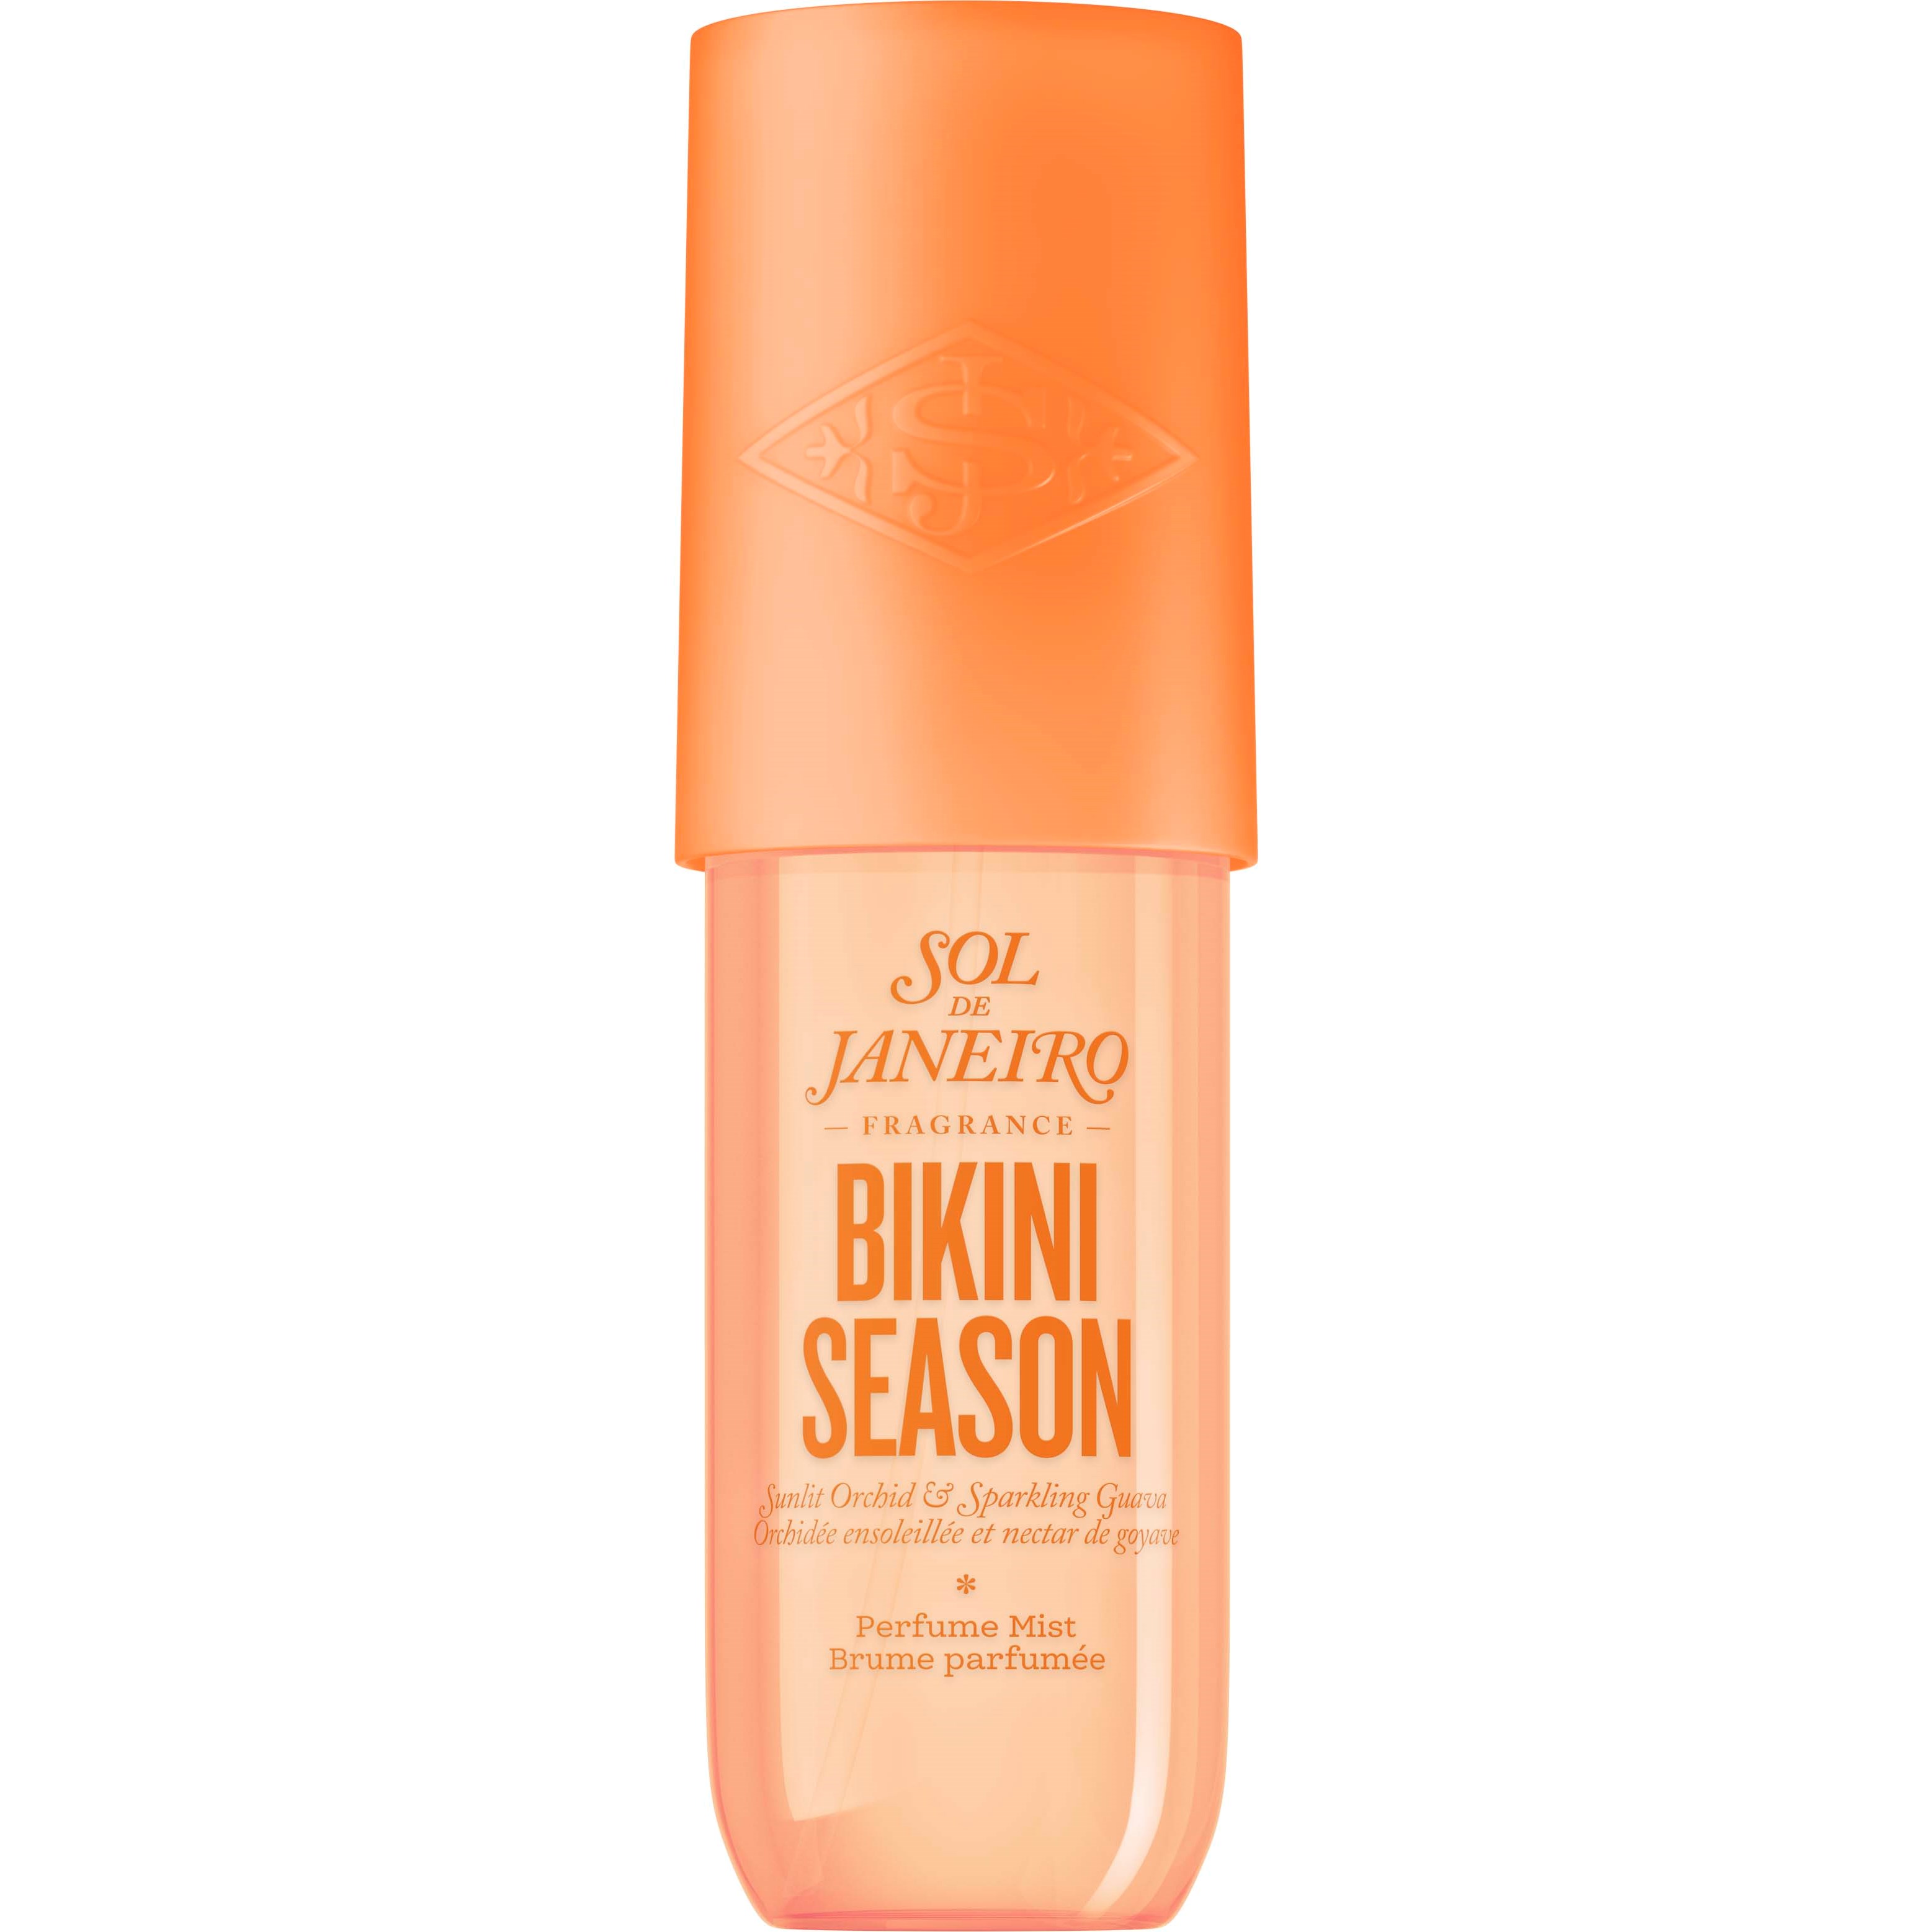 Sol de Janeiro Bikini Season Perfume Mist 90 ml